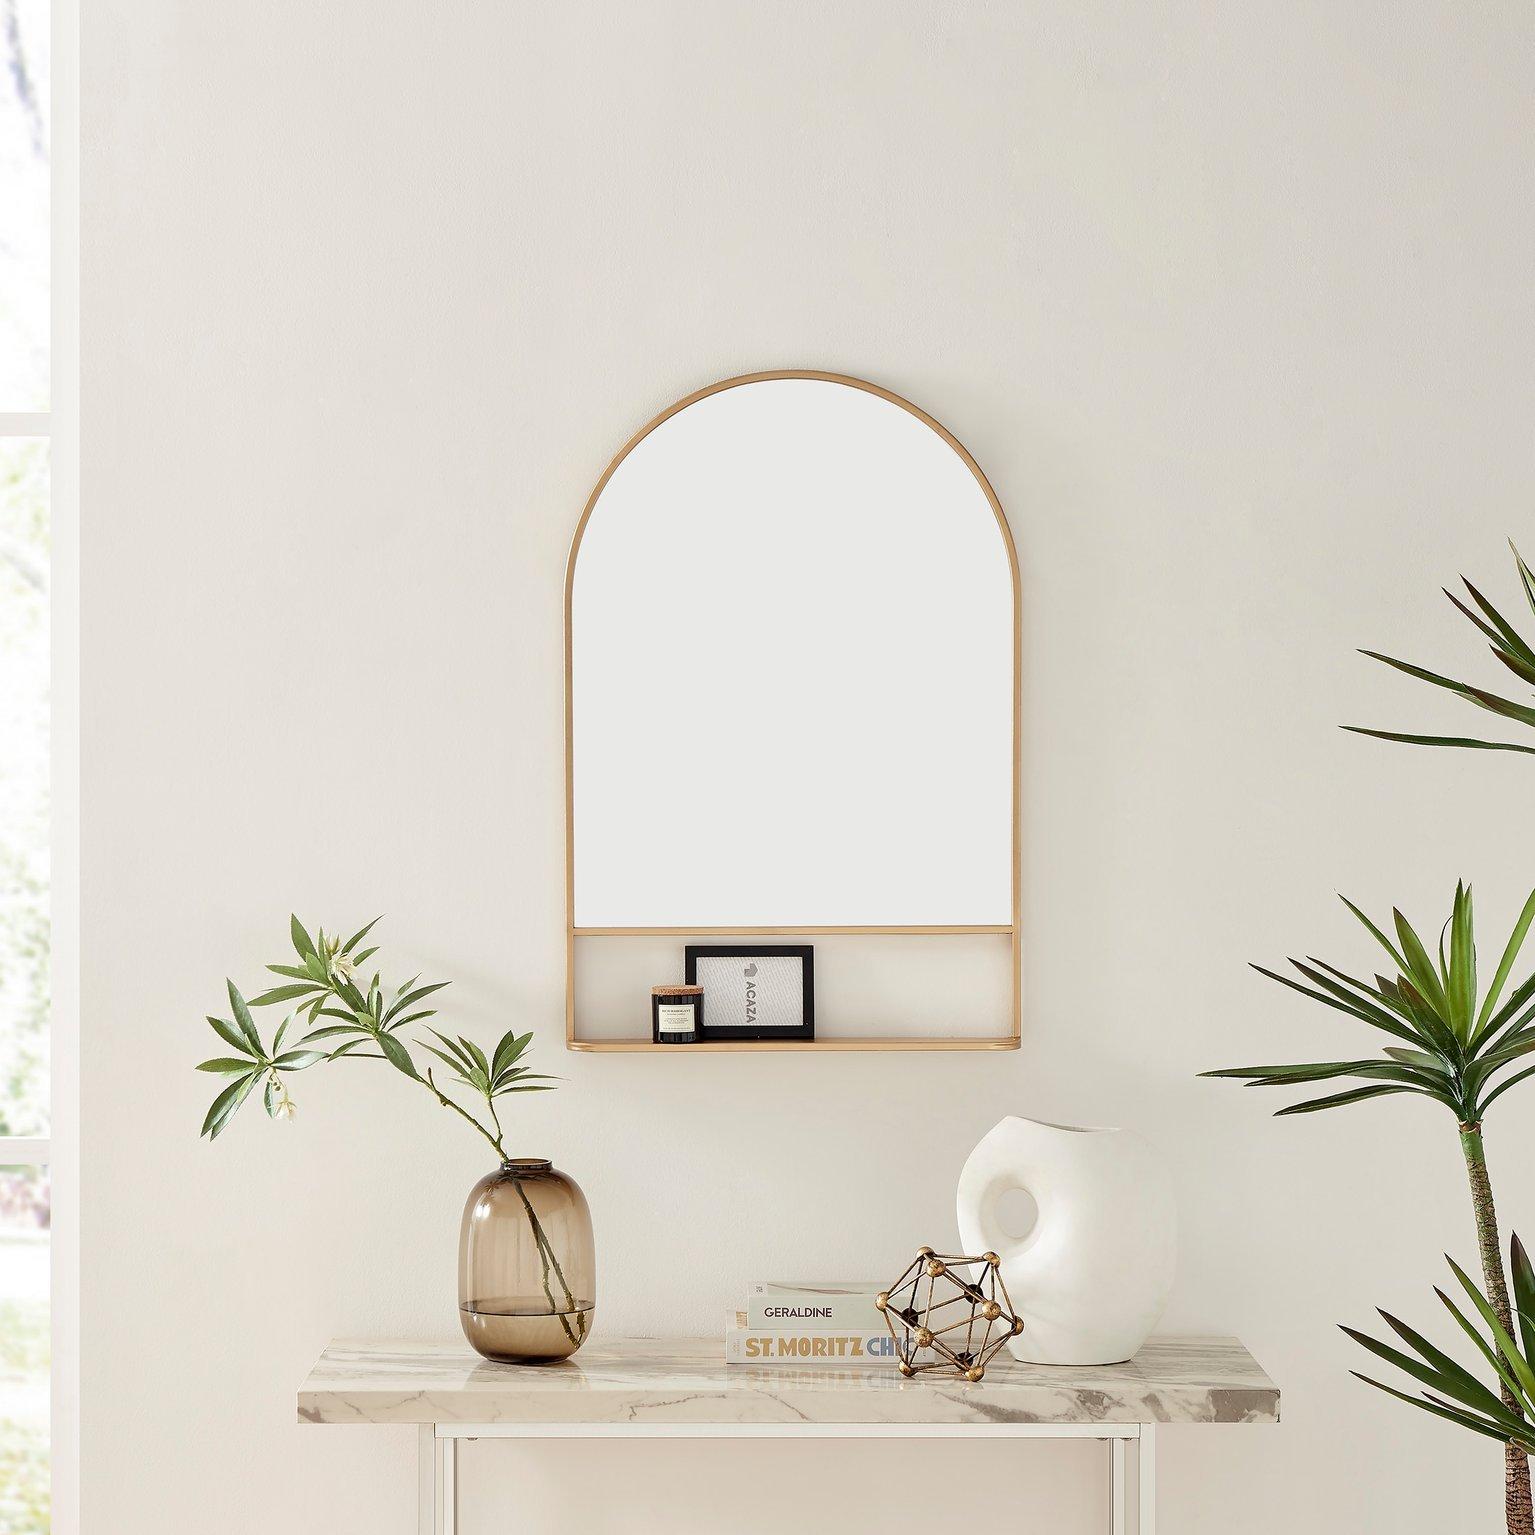 Dara Metal Arch Minimalist Framed Wall Mirror with Shelf